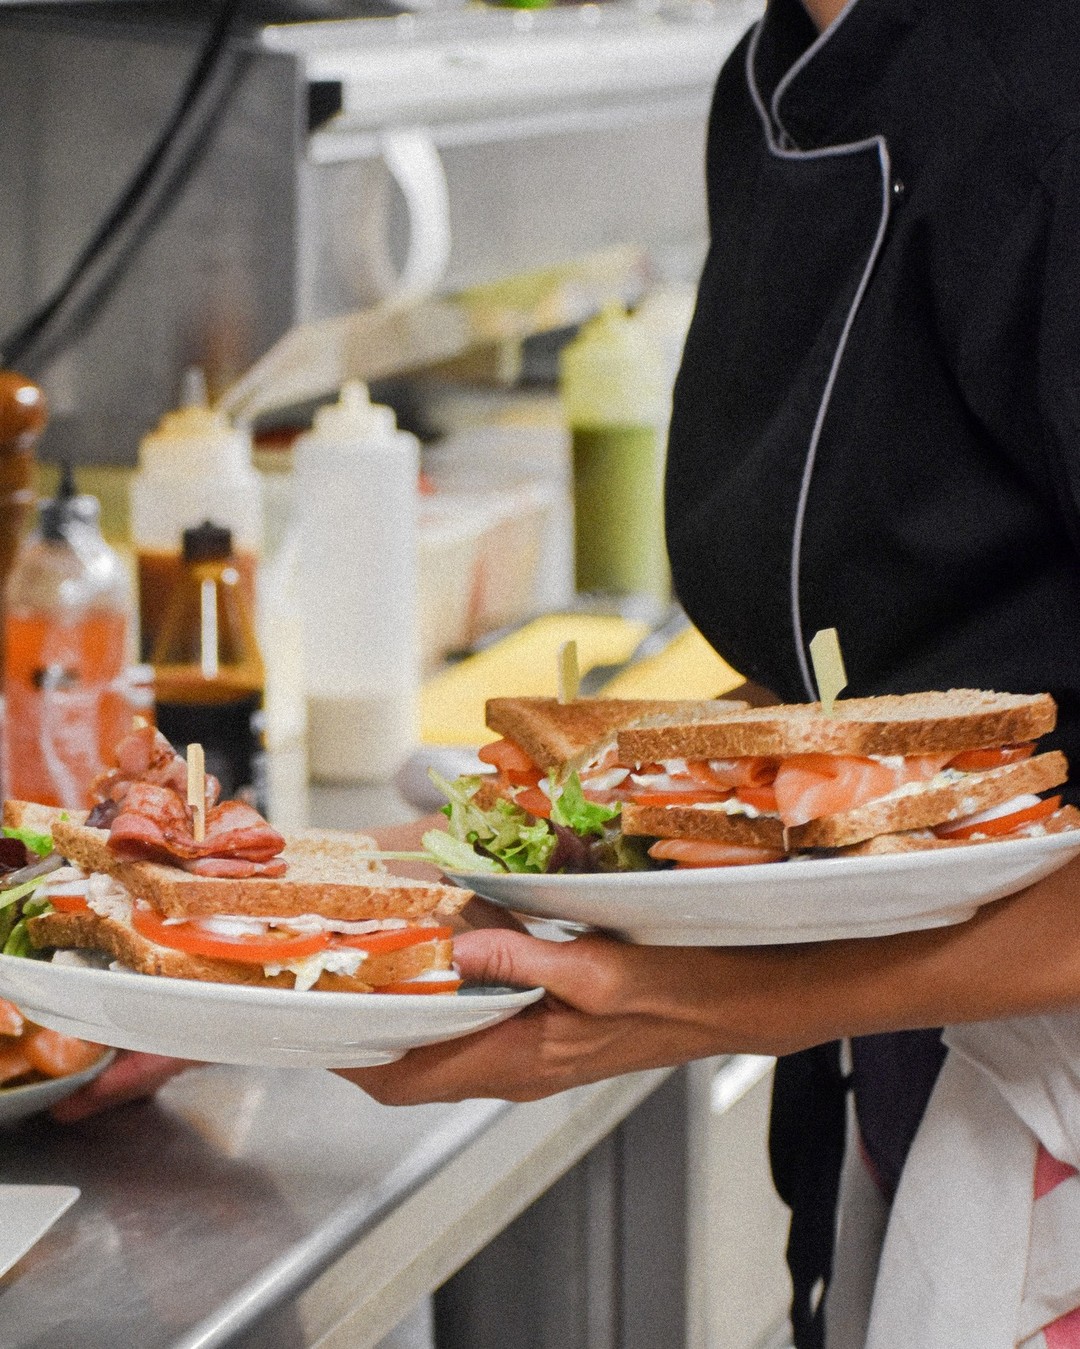 Club Sandwich avec Pain aux Céréales et Saumon Fumé 🍽  Bon appétit 😋
_
Boulevard de la Croisette, Cannes
04.93.43.67.05
www.vegaluna.fr  #food #lunch #cannes #restaurant #frenchriviera #beach #salmon